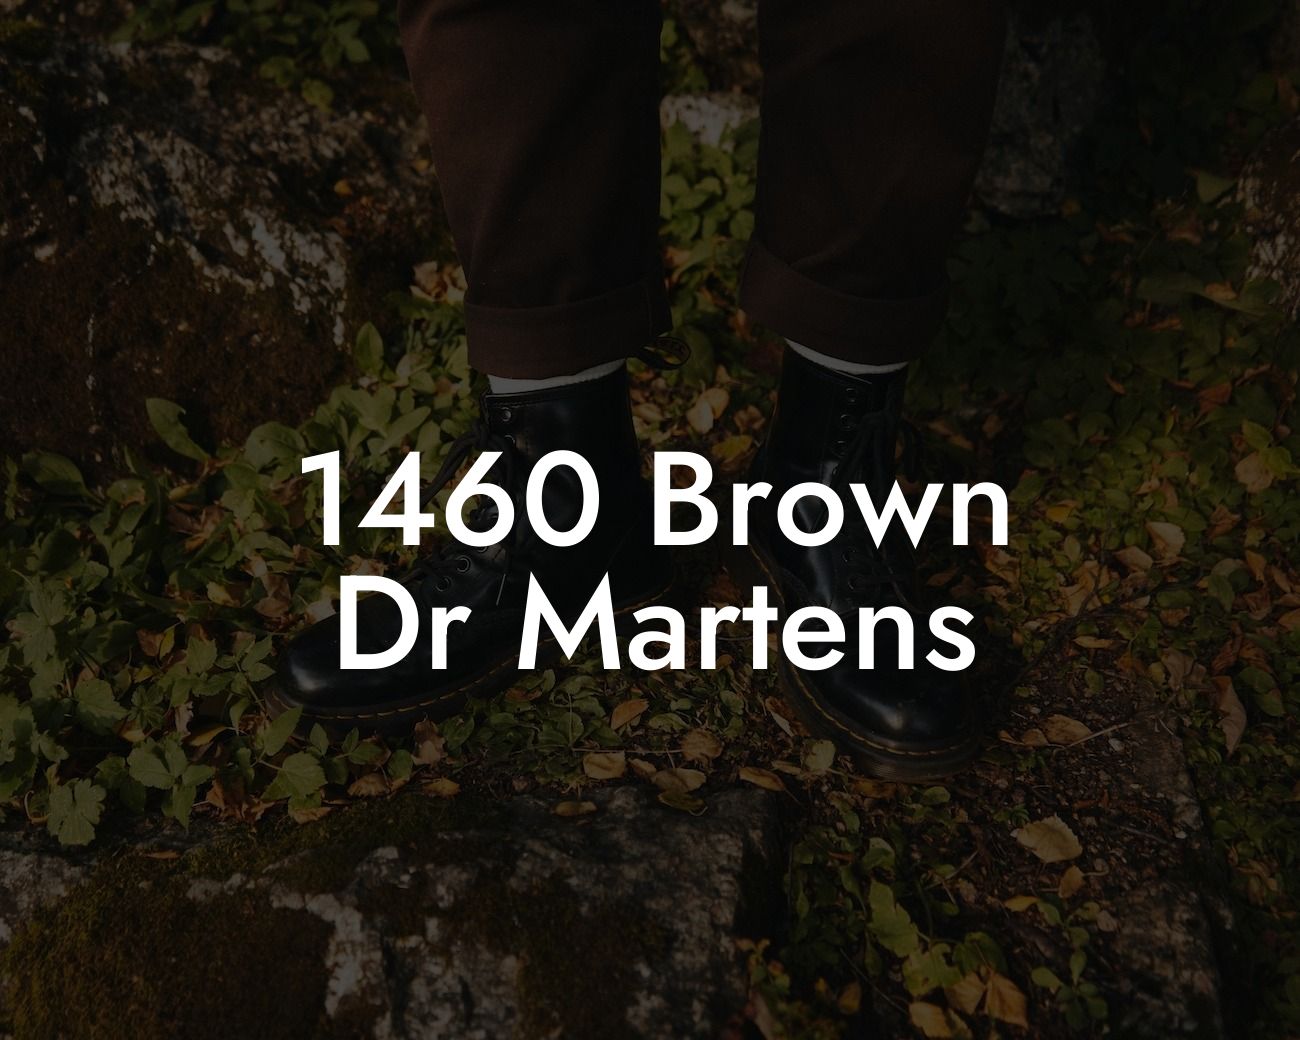 1460 Brown Dr Martens